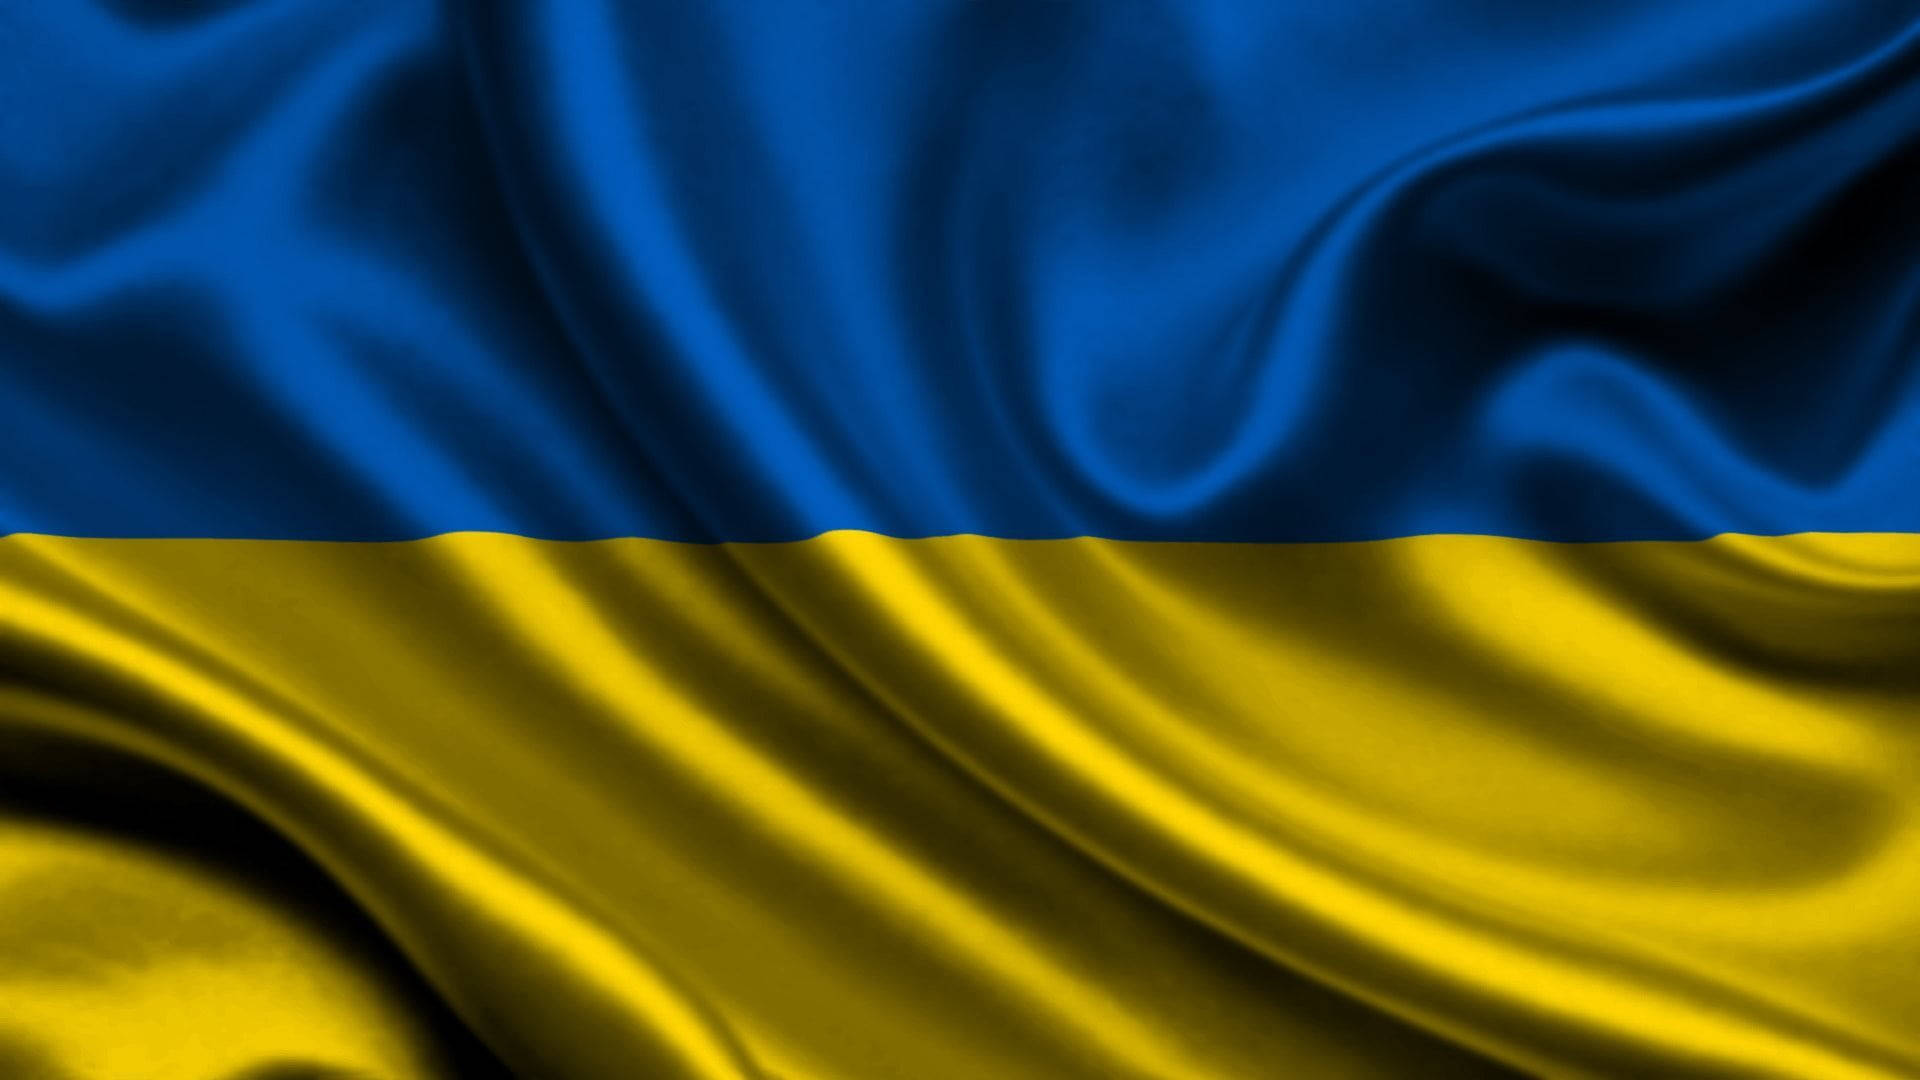 Ukraine Flag Background Wallpaper